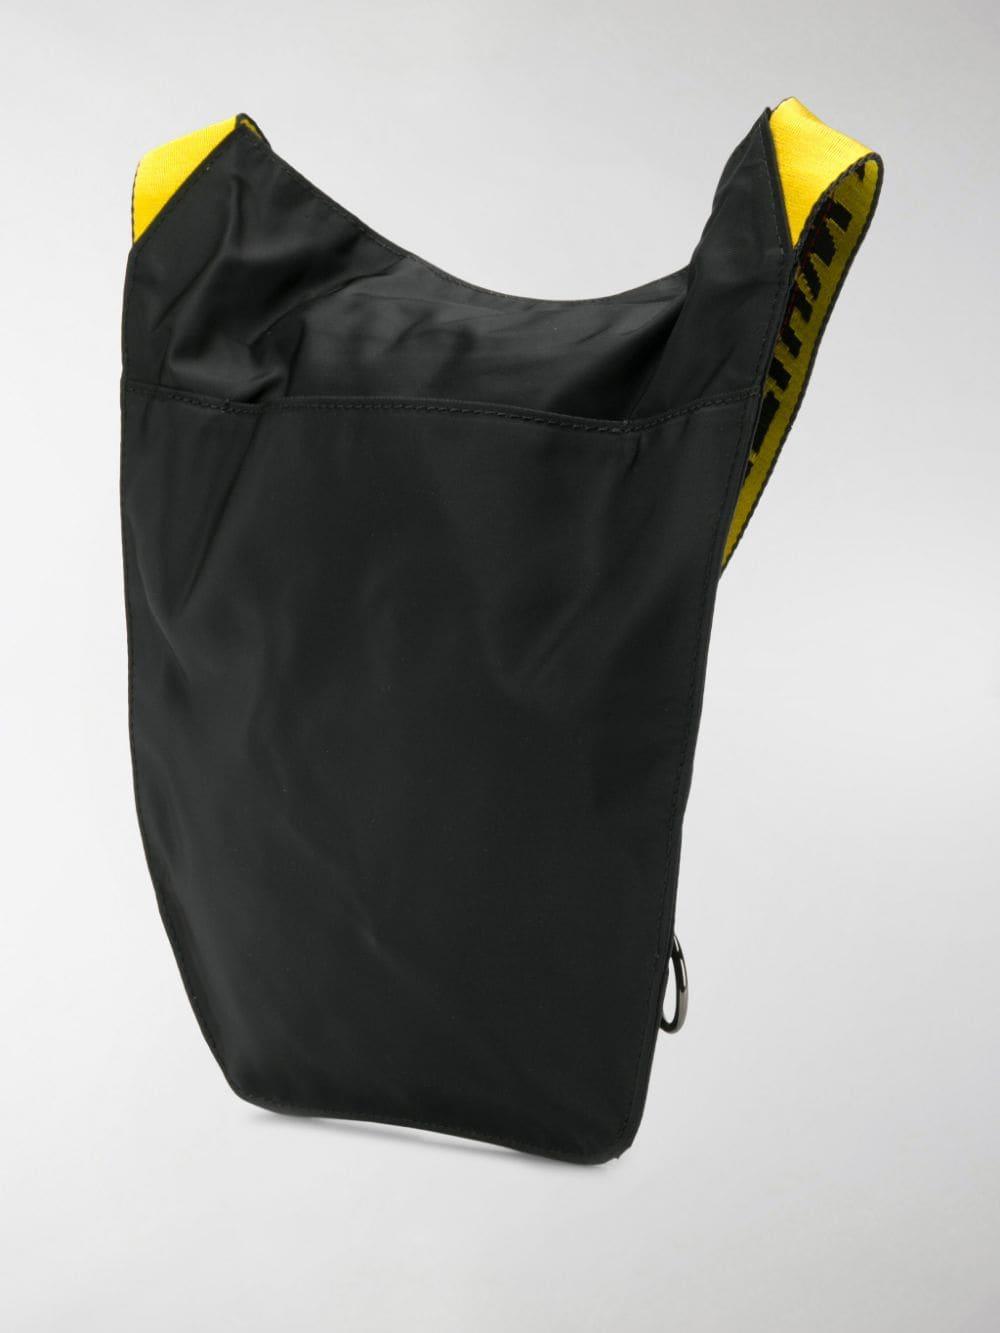 Off-White c/o Virgil Abloh Logo-strap Cross Body Bag in Black for Men - Lyst